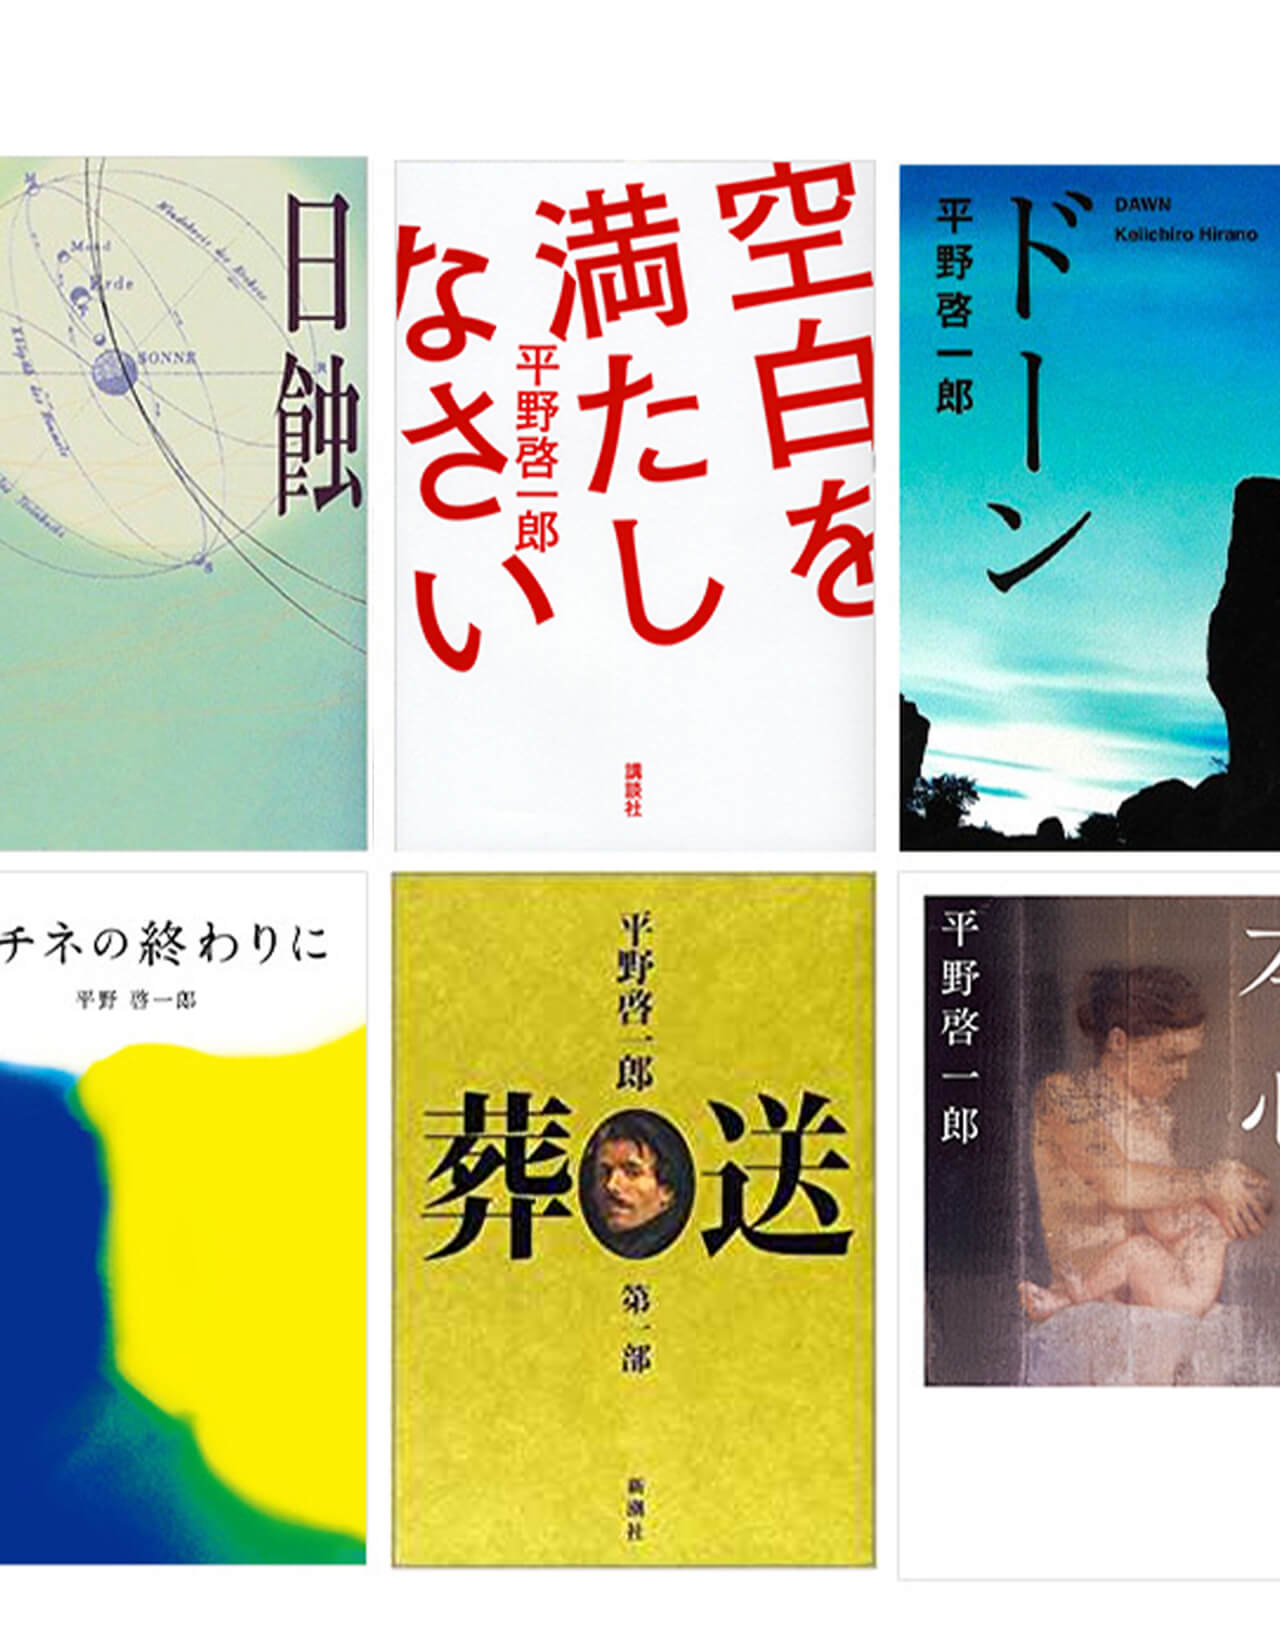 デビュー25周年、平野啓一郎が自身の作品を振り返る。「どこから読むべきか？」